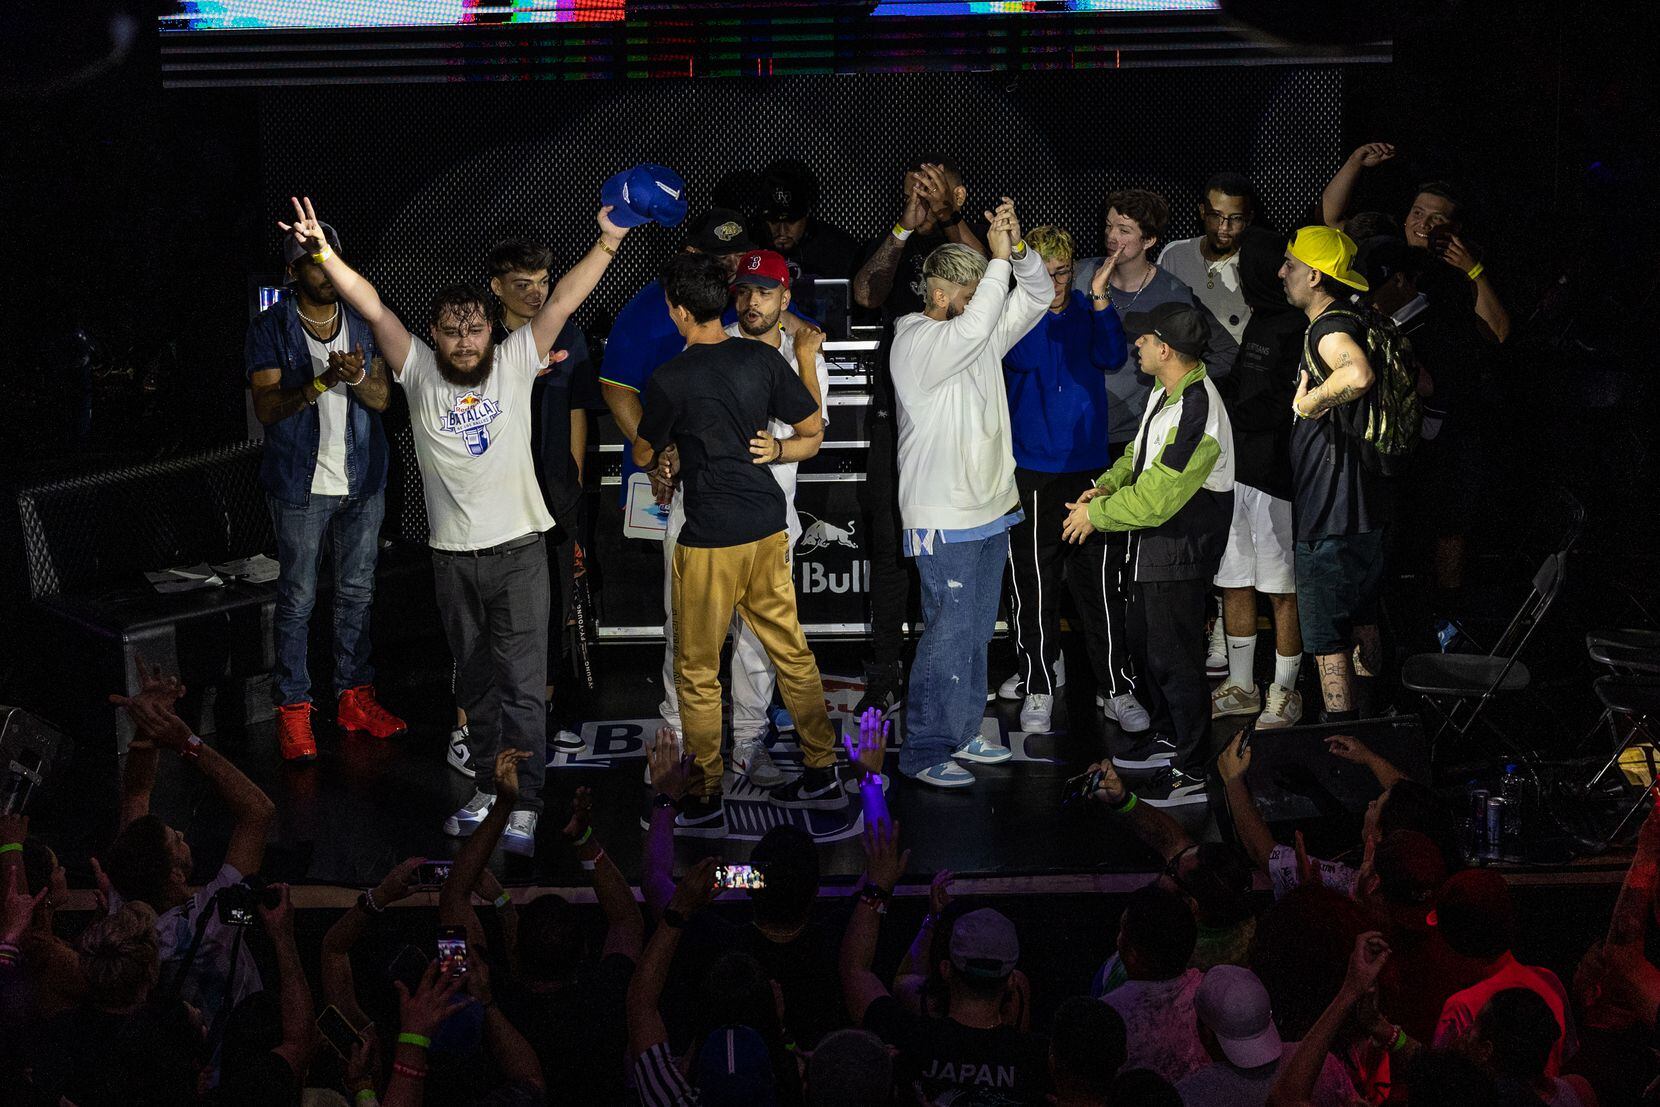 La competencia de freestyle rap de Red Bull Batalla se llevó a cabo en Dallas el sábado 16...